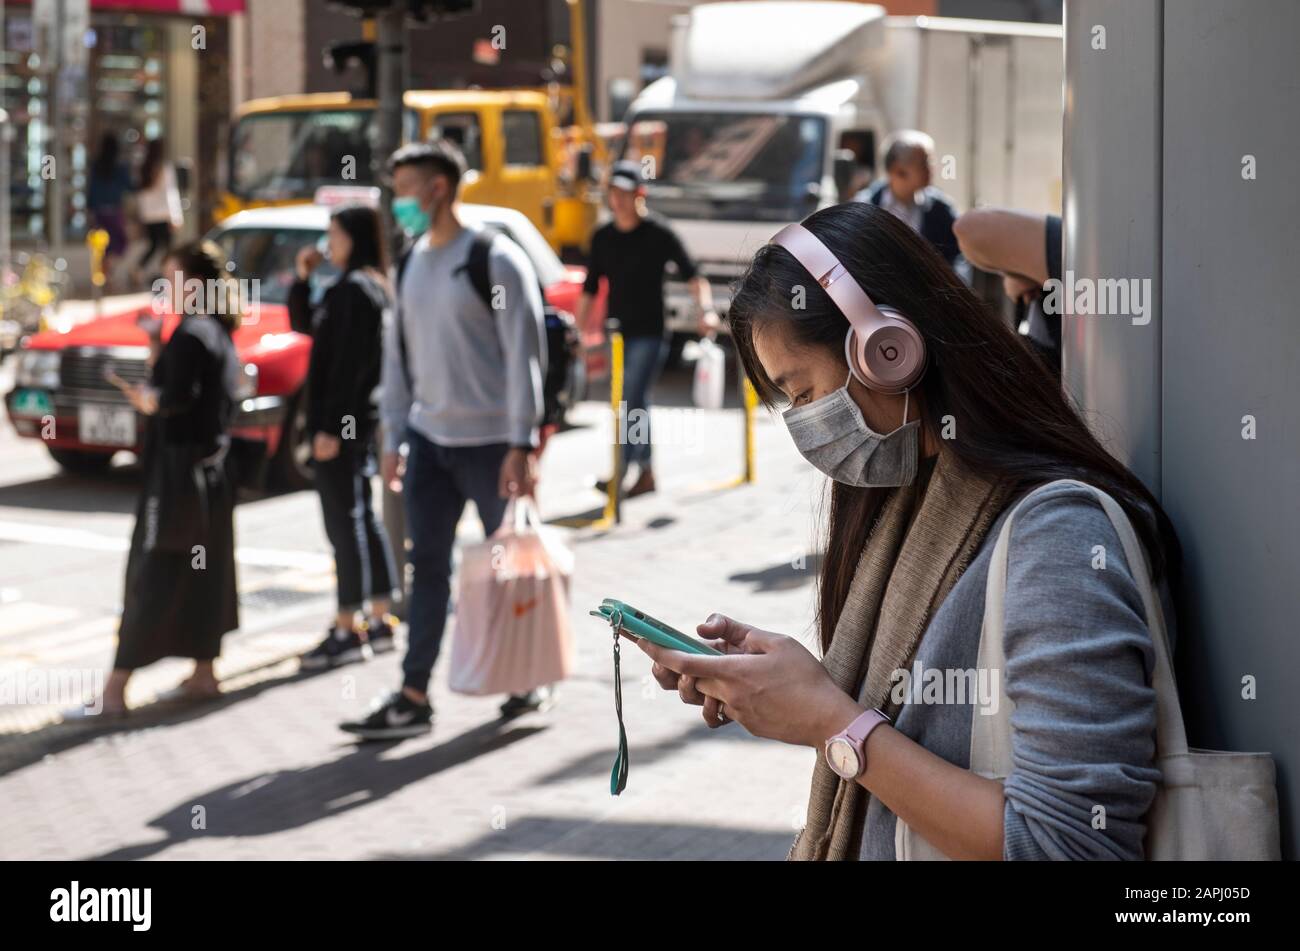 Una donna copre il suo viso con una maschera sanitaria mentre ascolta la musica sulla strada dopo che i primi casi di coronavirus sono stati confermati a Hong Kong. La Cina ha implementato un sistema di trasporto pubblico e un blocco aeroportuale in diverse città per rallentare la diffusione del coronavirus di Wuhan. Foto Stock